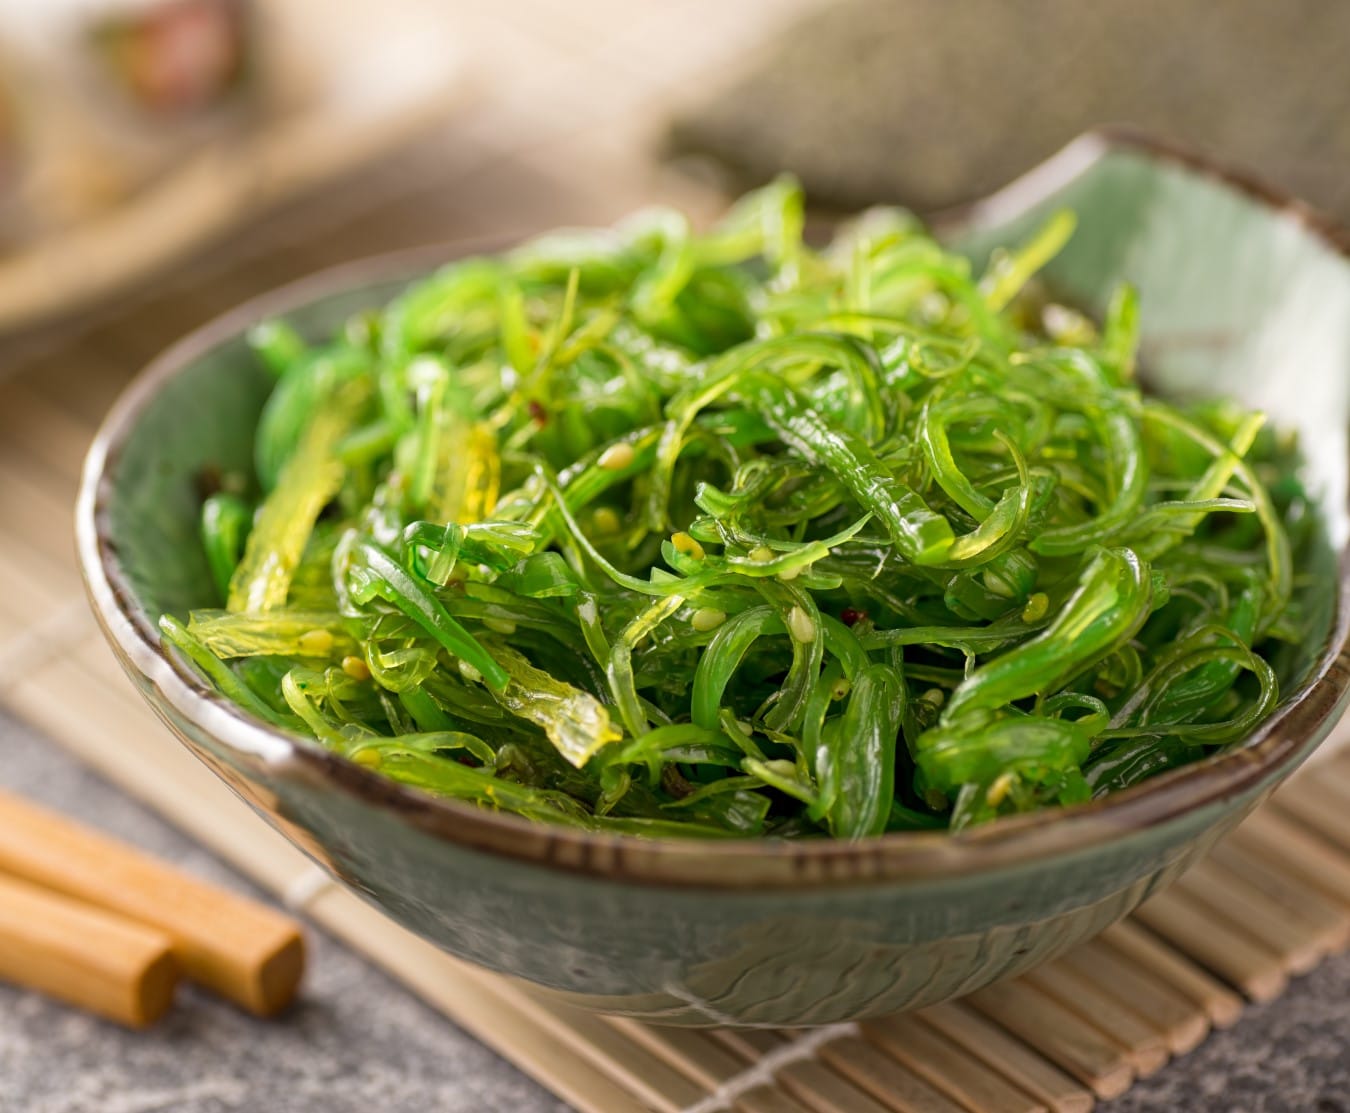 En otros países, como China, Corea del Sur, y Japón, se cultiva y comercializan comidas con el alga invasora
